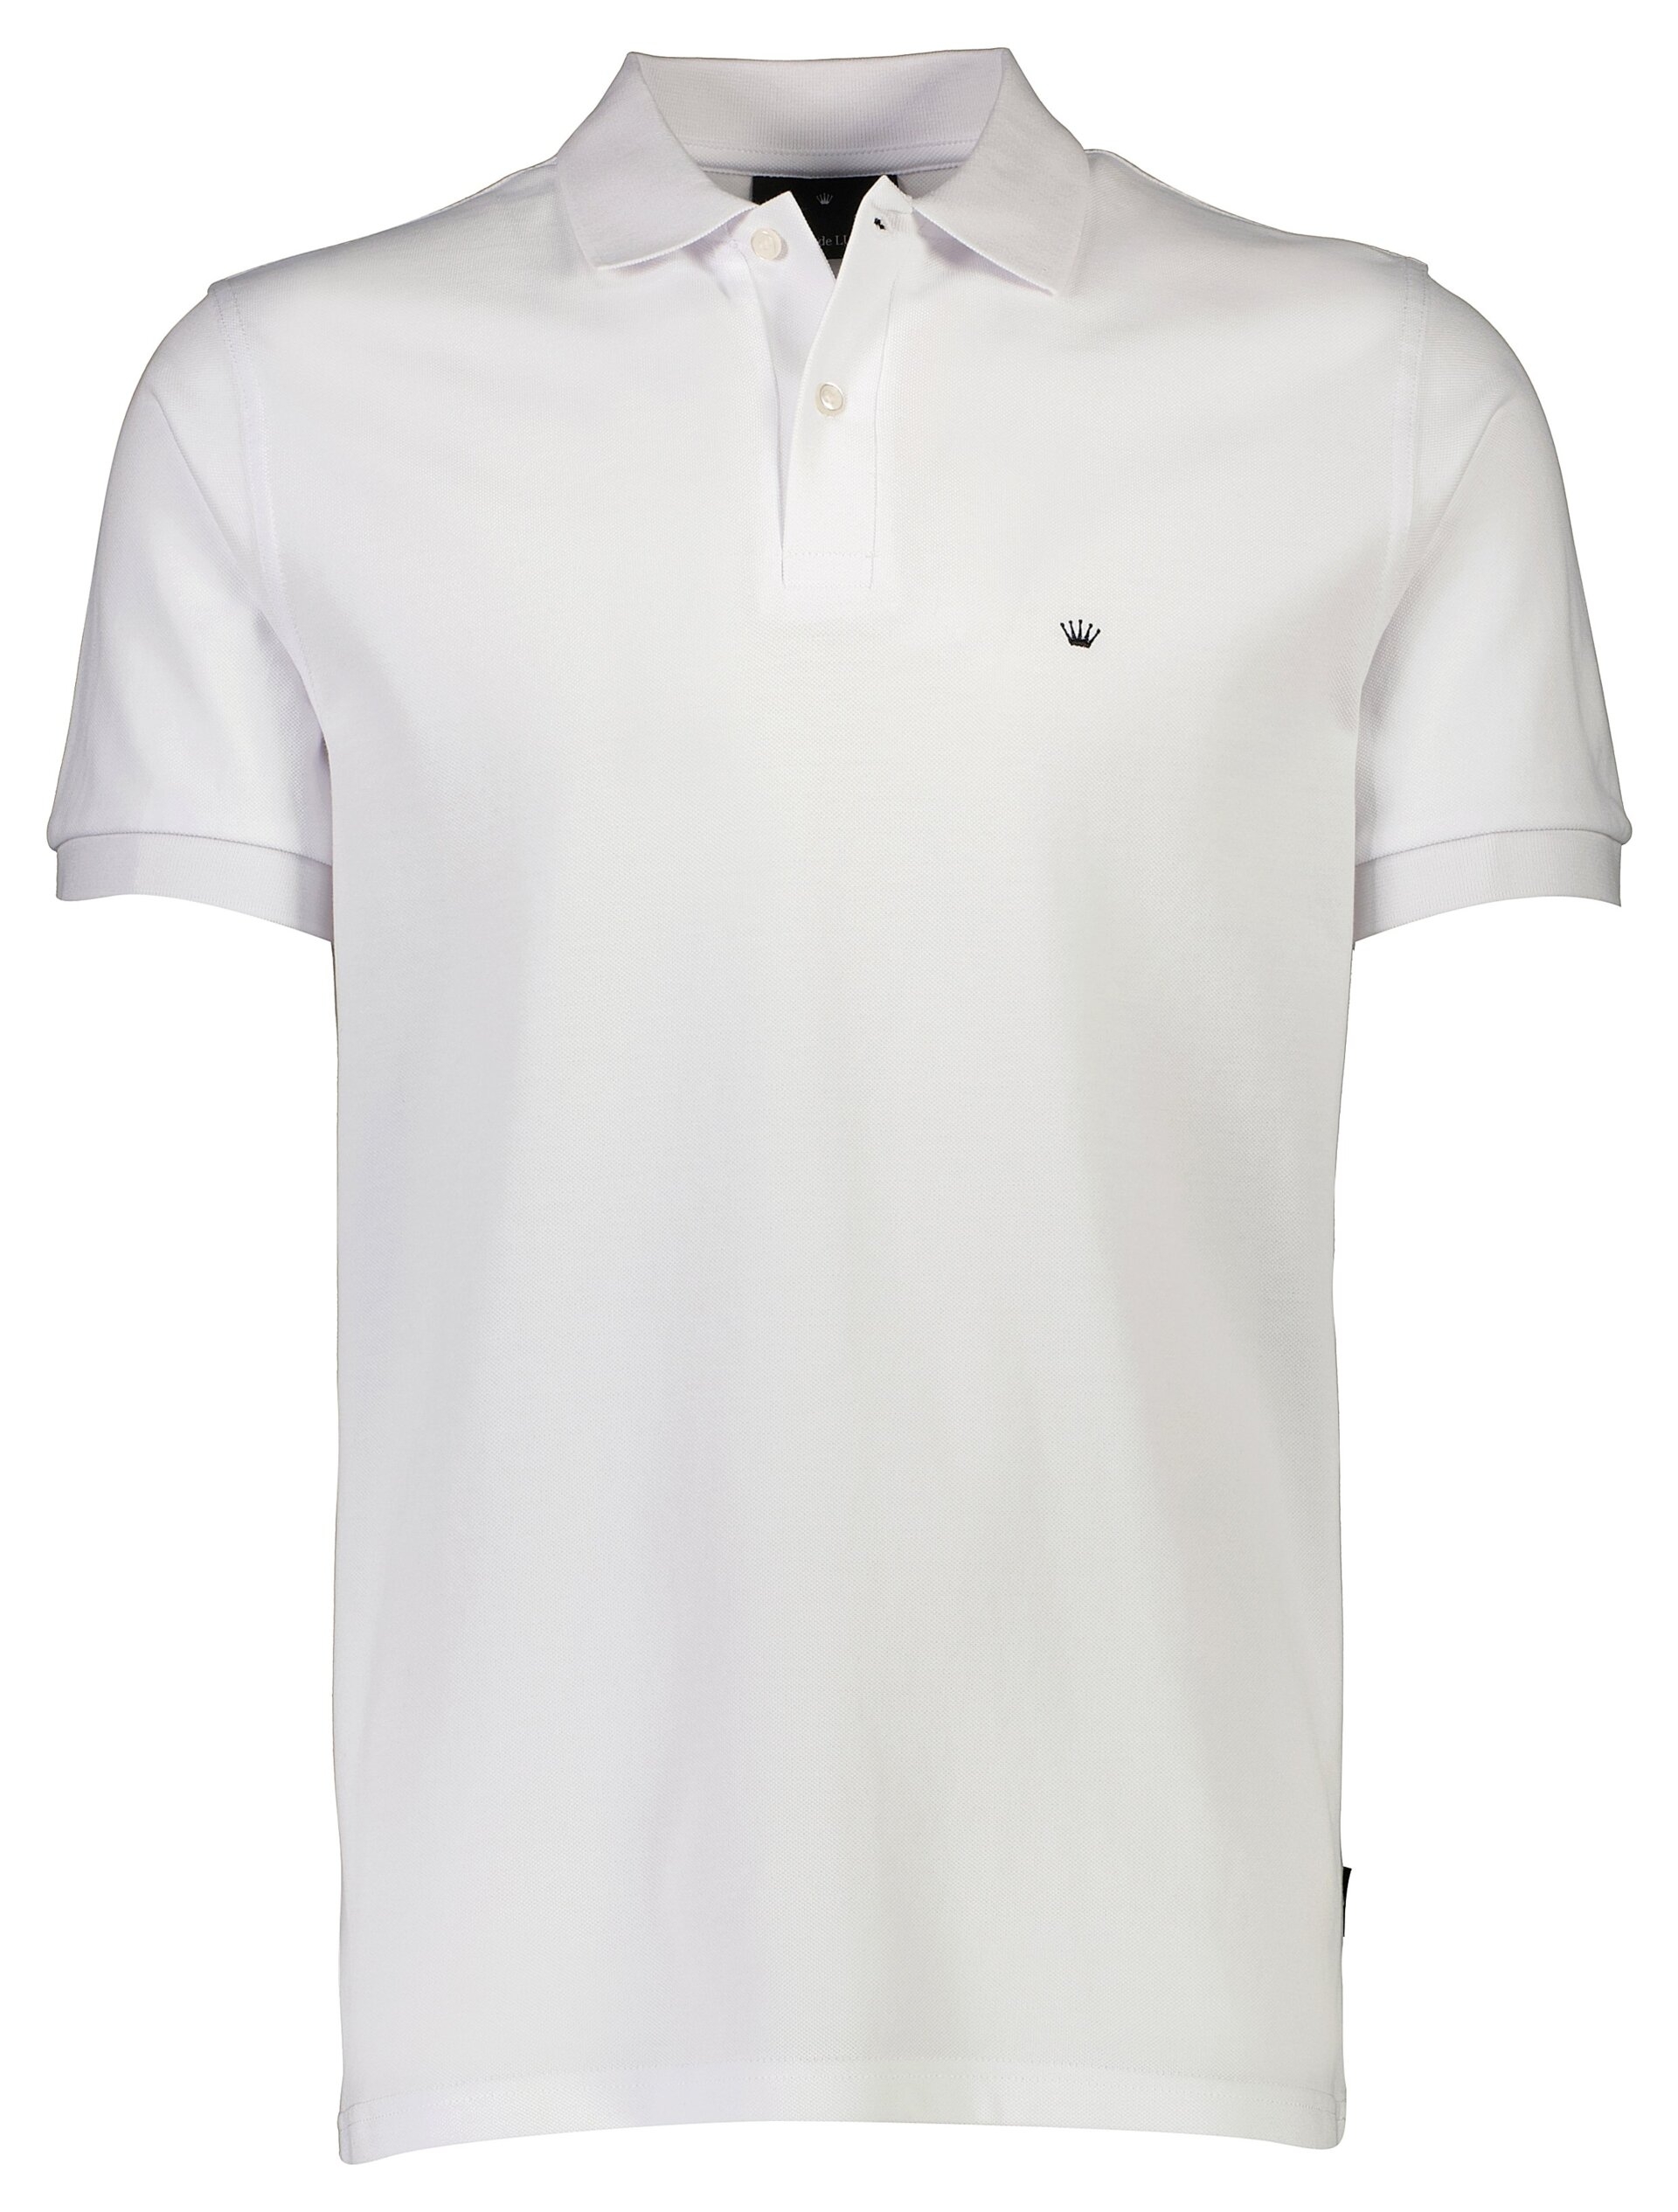 Junk de Luxe Polo shirt white / white